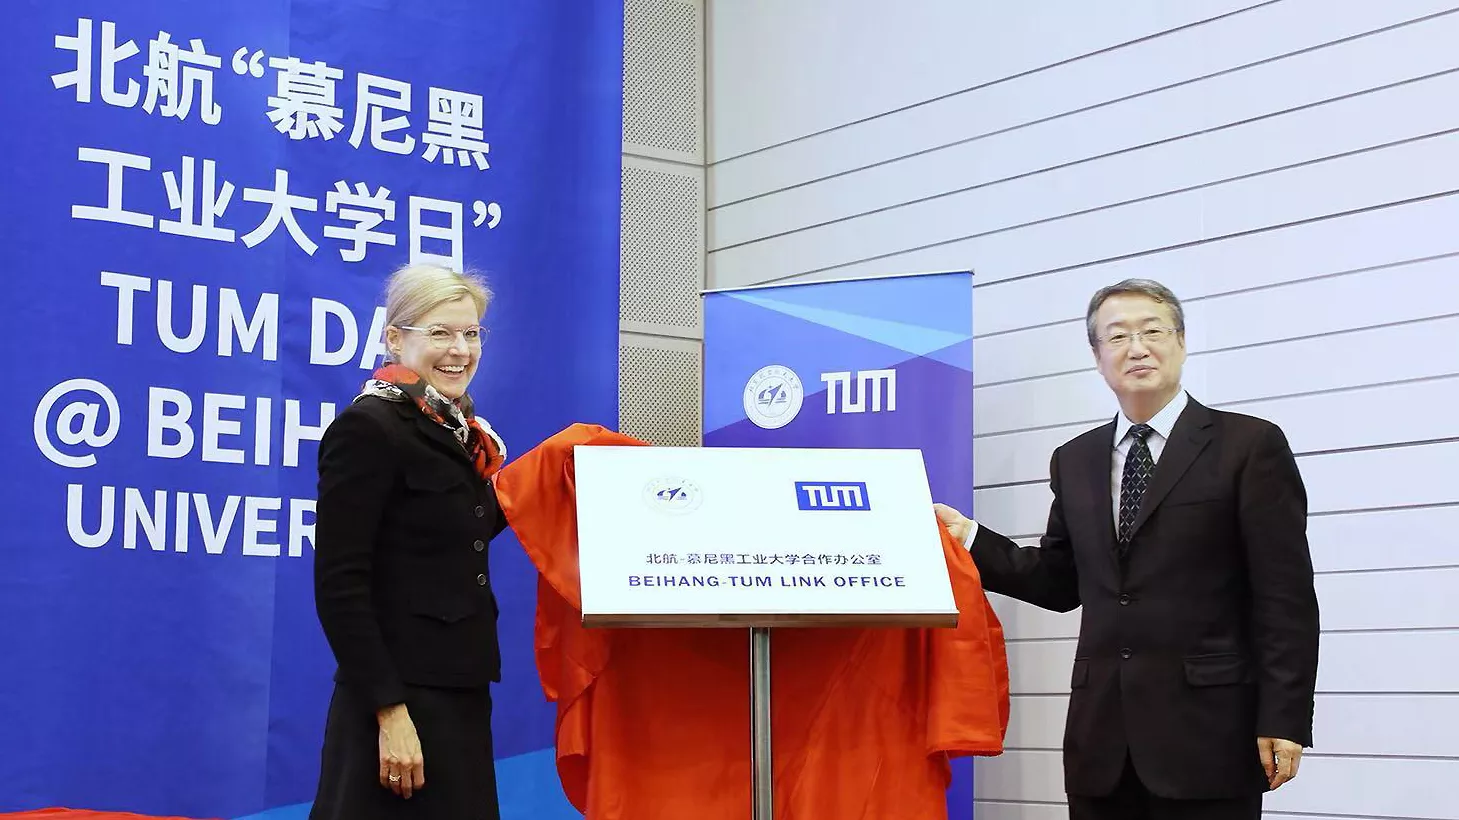 SVP Juliane Winkelmann und VP Haijun Huang eröffnen den TUM Day an der Beihang University.